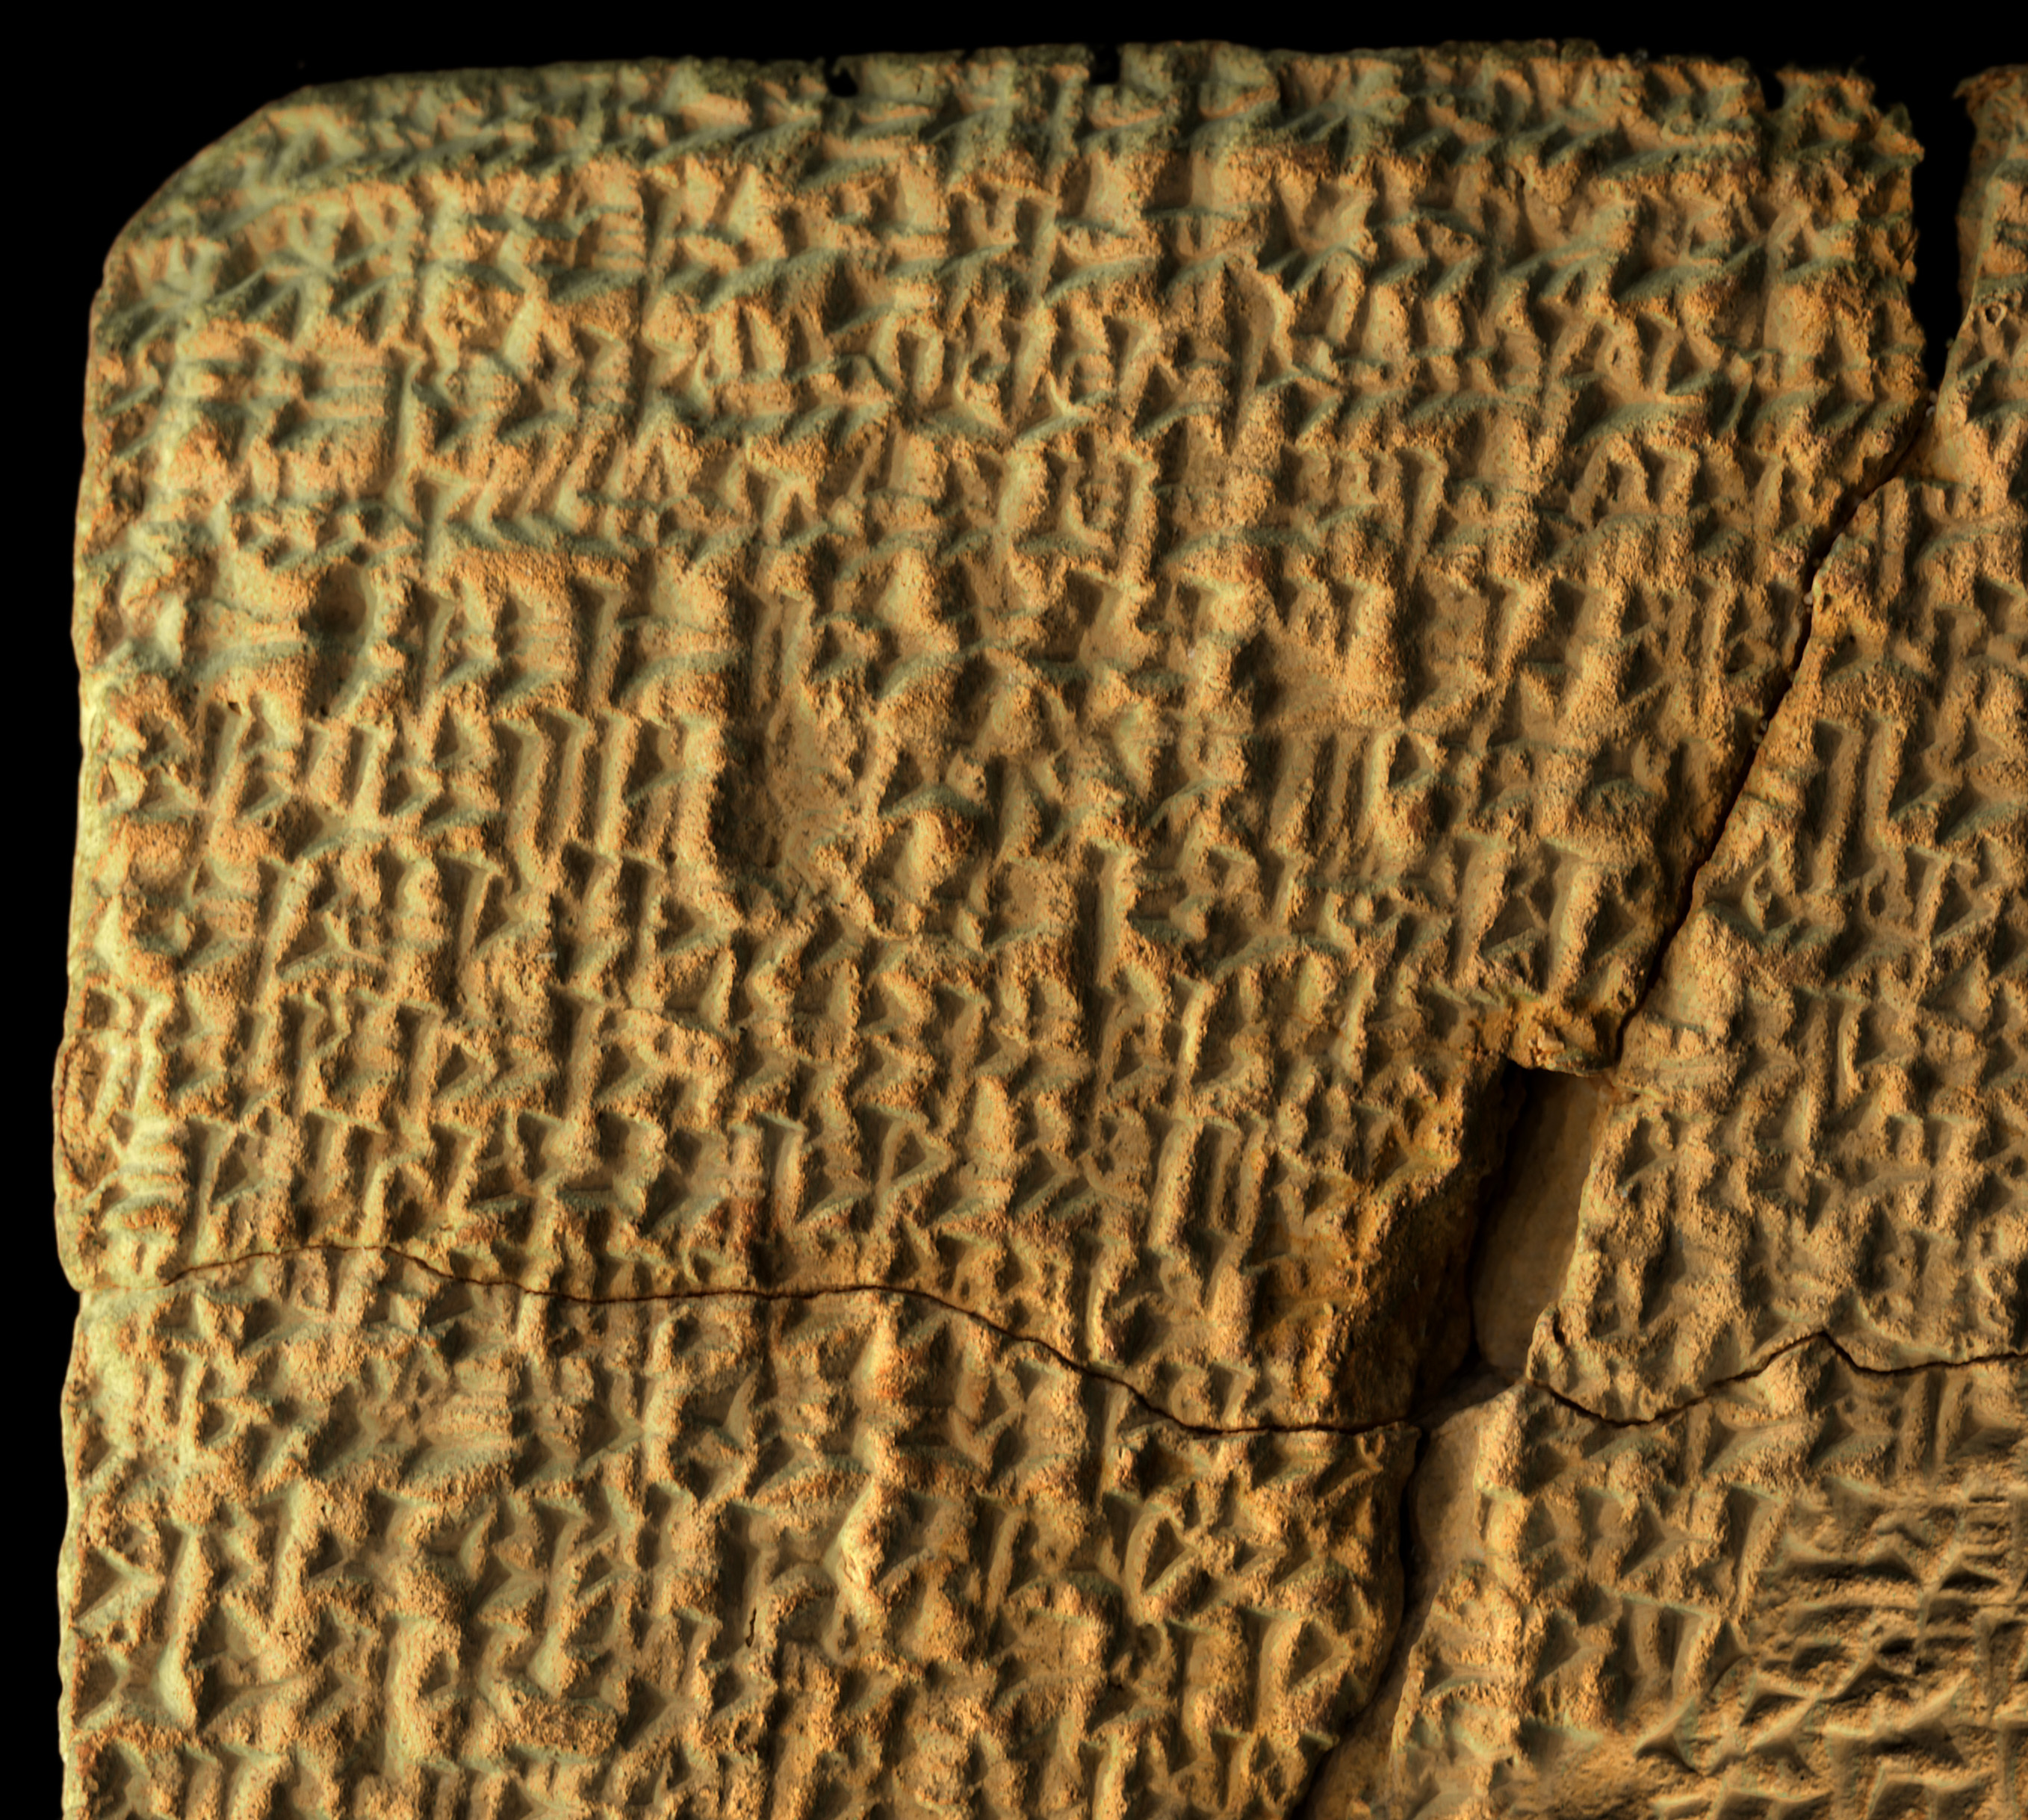 7 - cuneiform text, A Song of Praise to Amurru